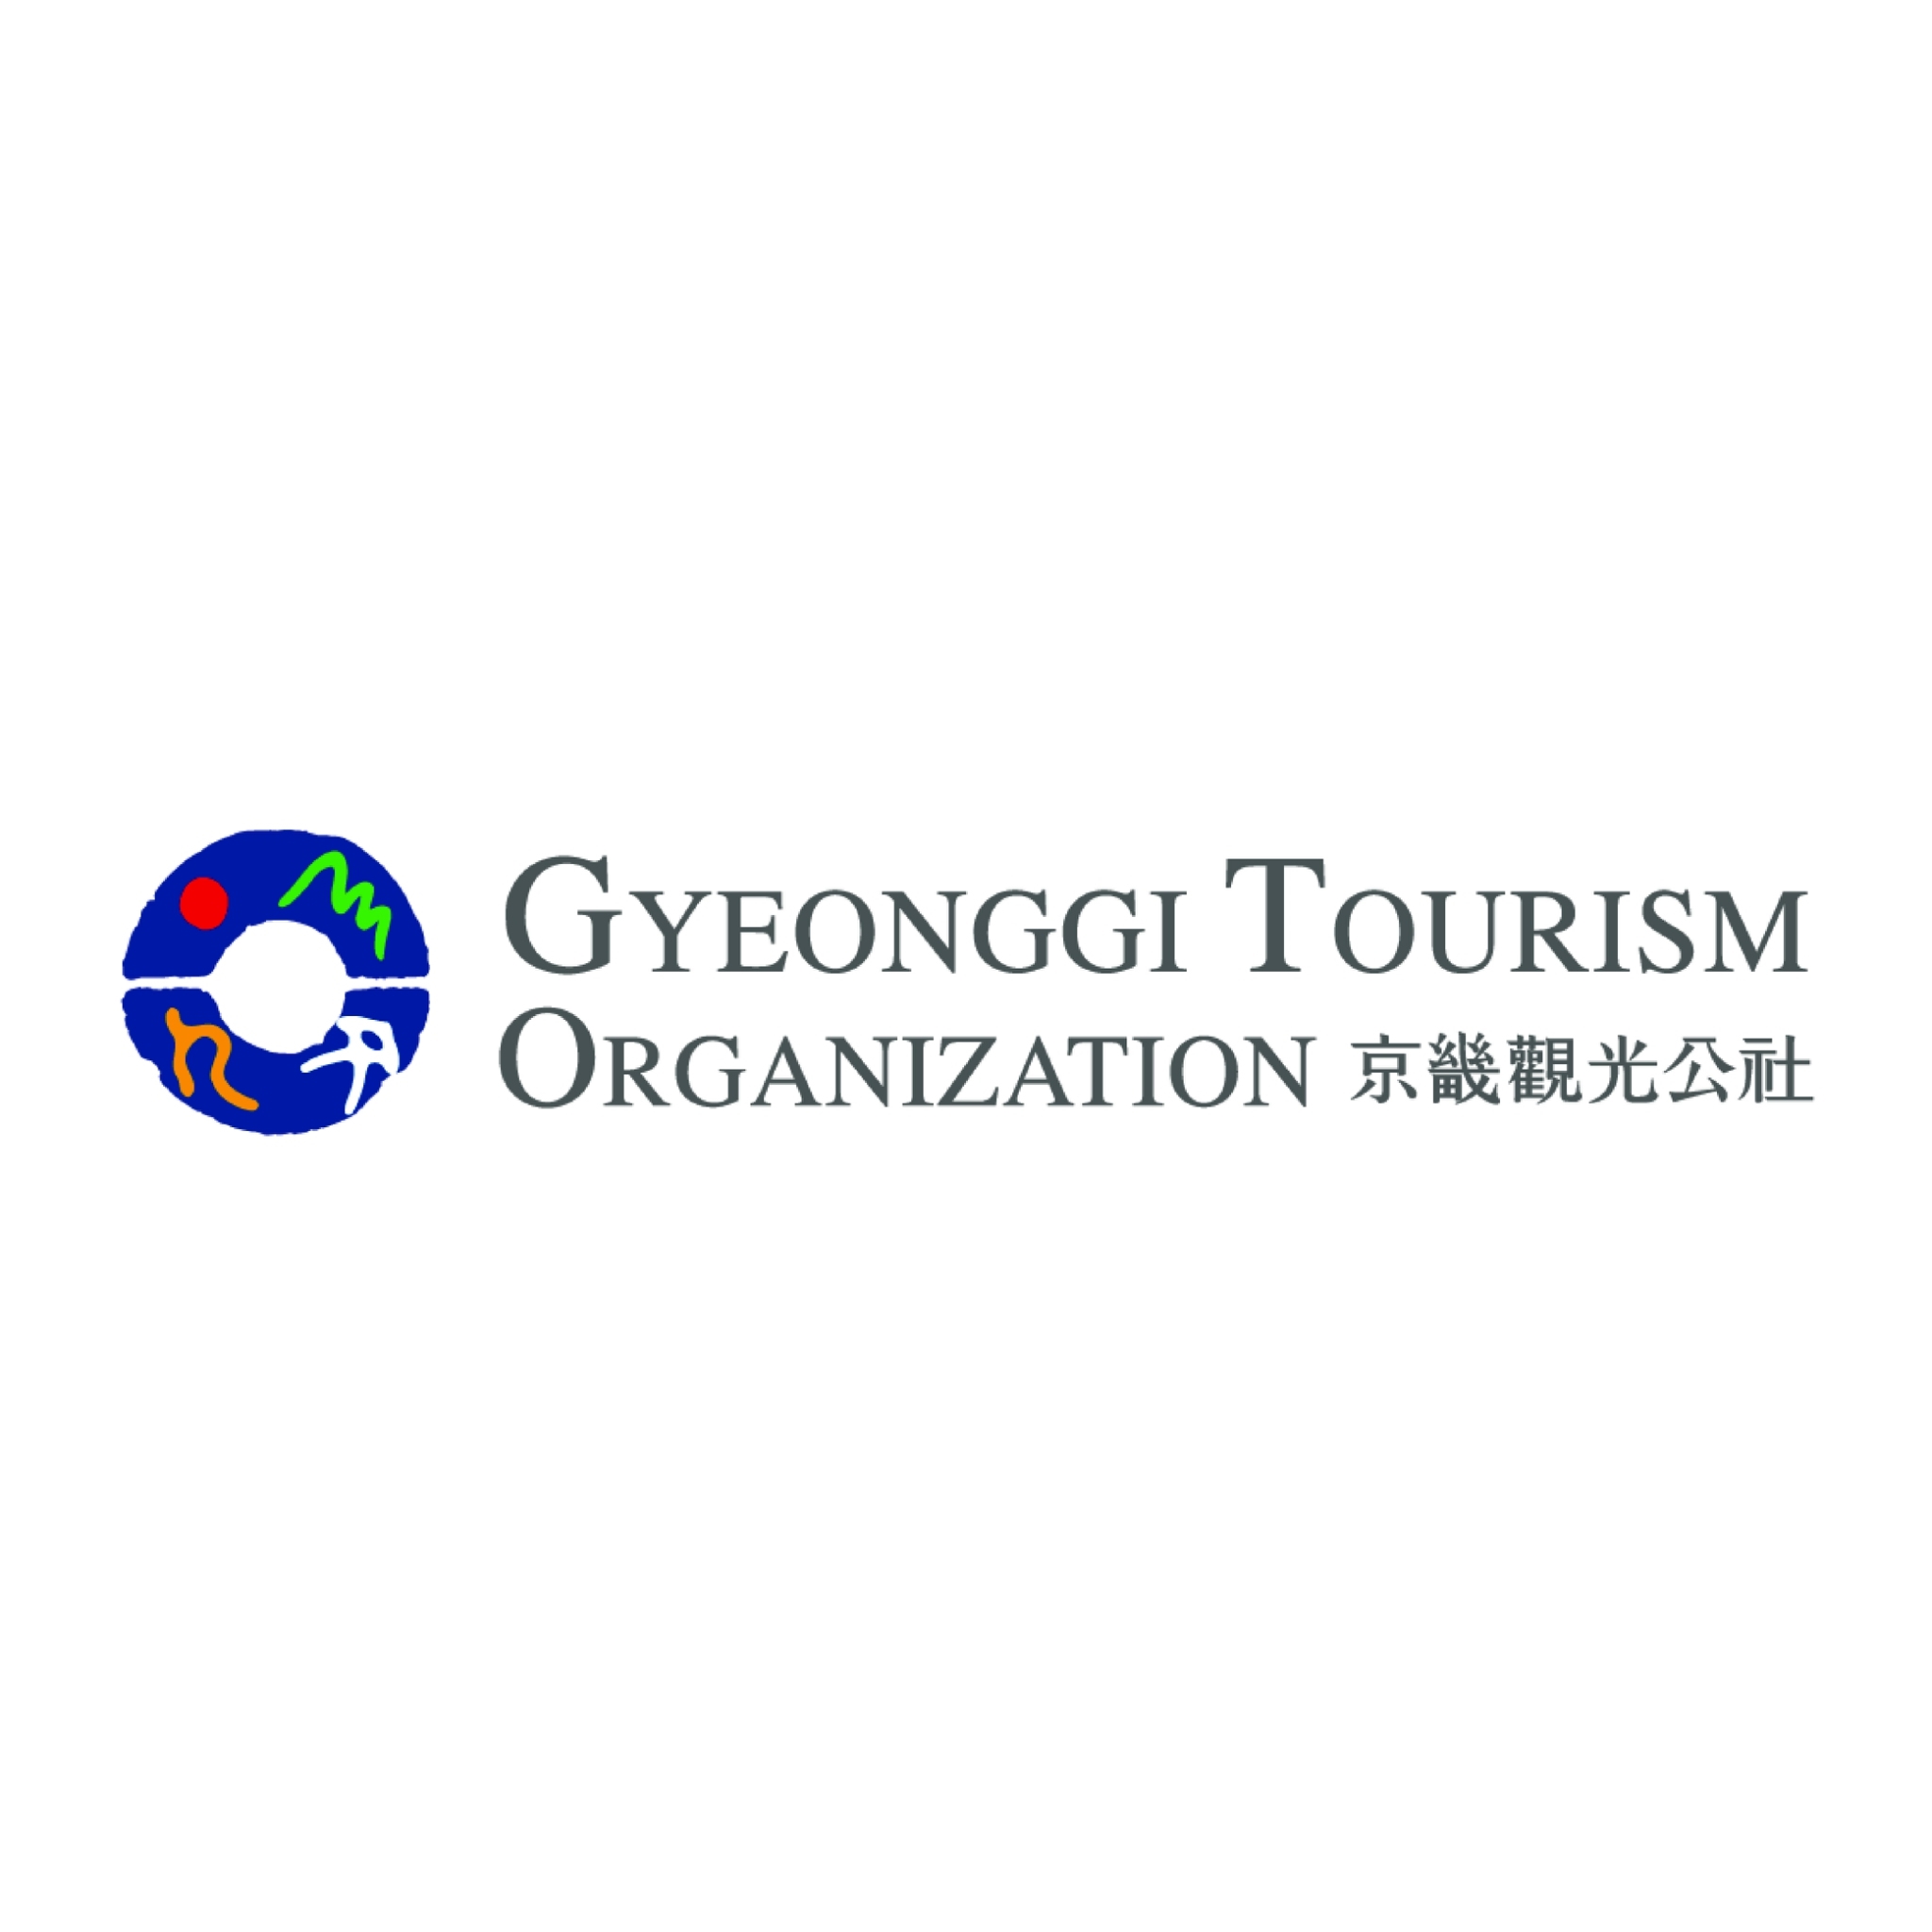 GYEONGGI TOURISM ORGANISATION